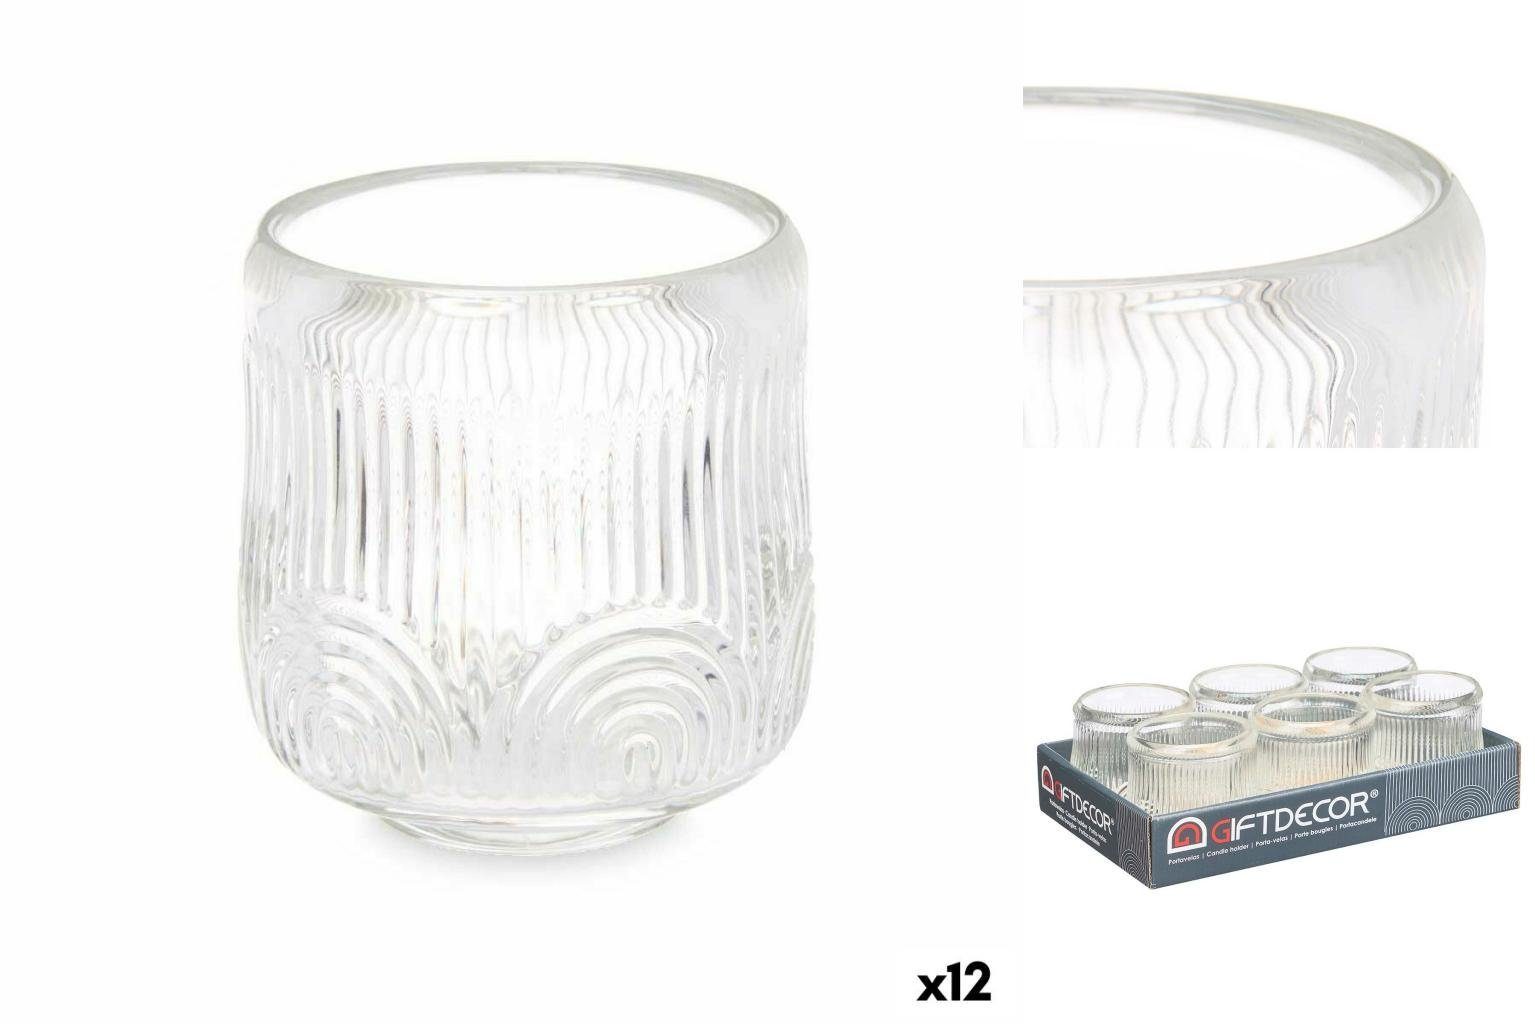 Gift Decor Windlicht Kerzenschale Streifen Durchsichtig Glas 9 x 9,5 x 9 cm 12 Stück